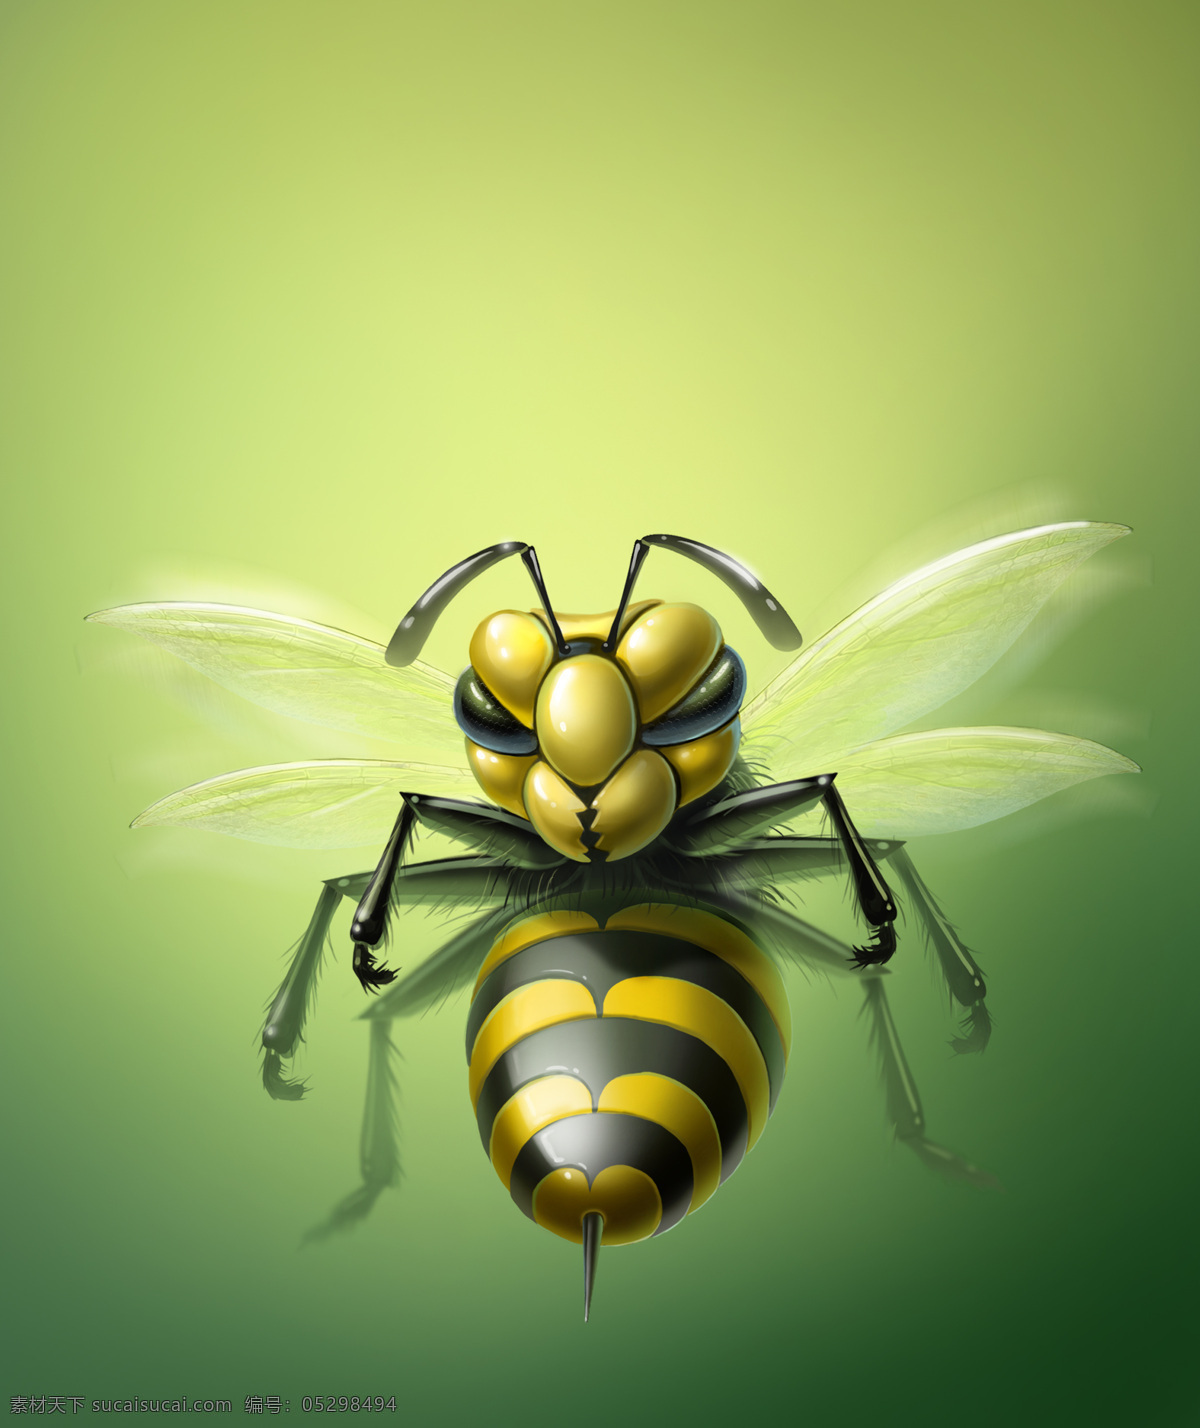 立体 蜜蜂 3d蜜蜂 3d动物 立体动物 陆地动物 动物世界 卡通动物 漫画动物 其他类别 生活百科